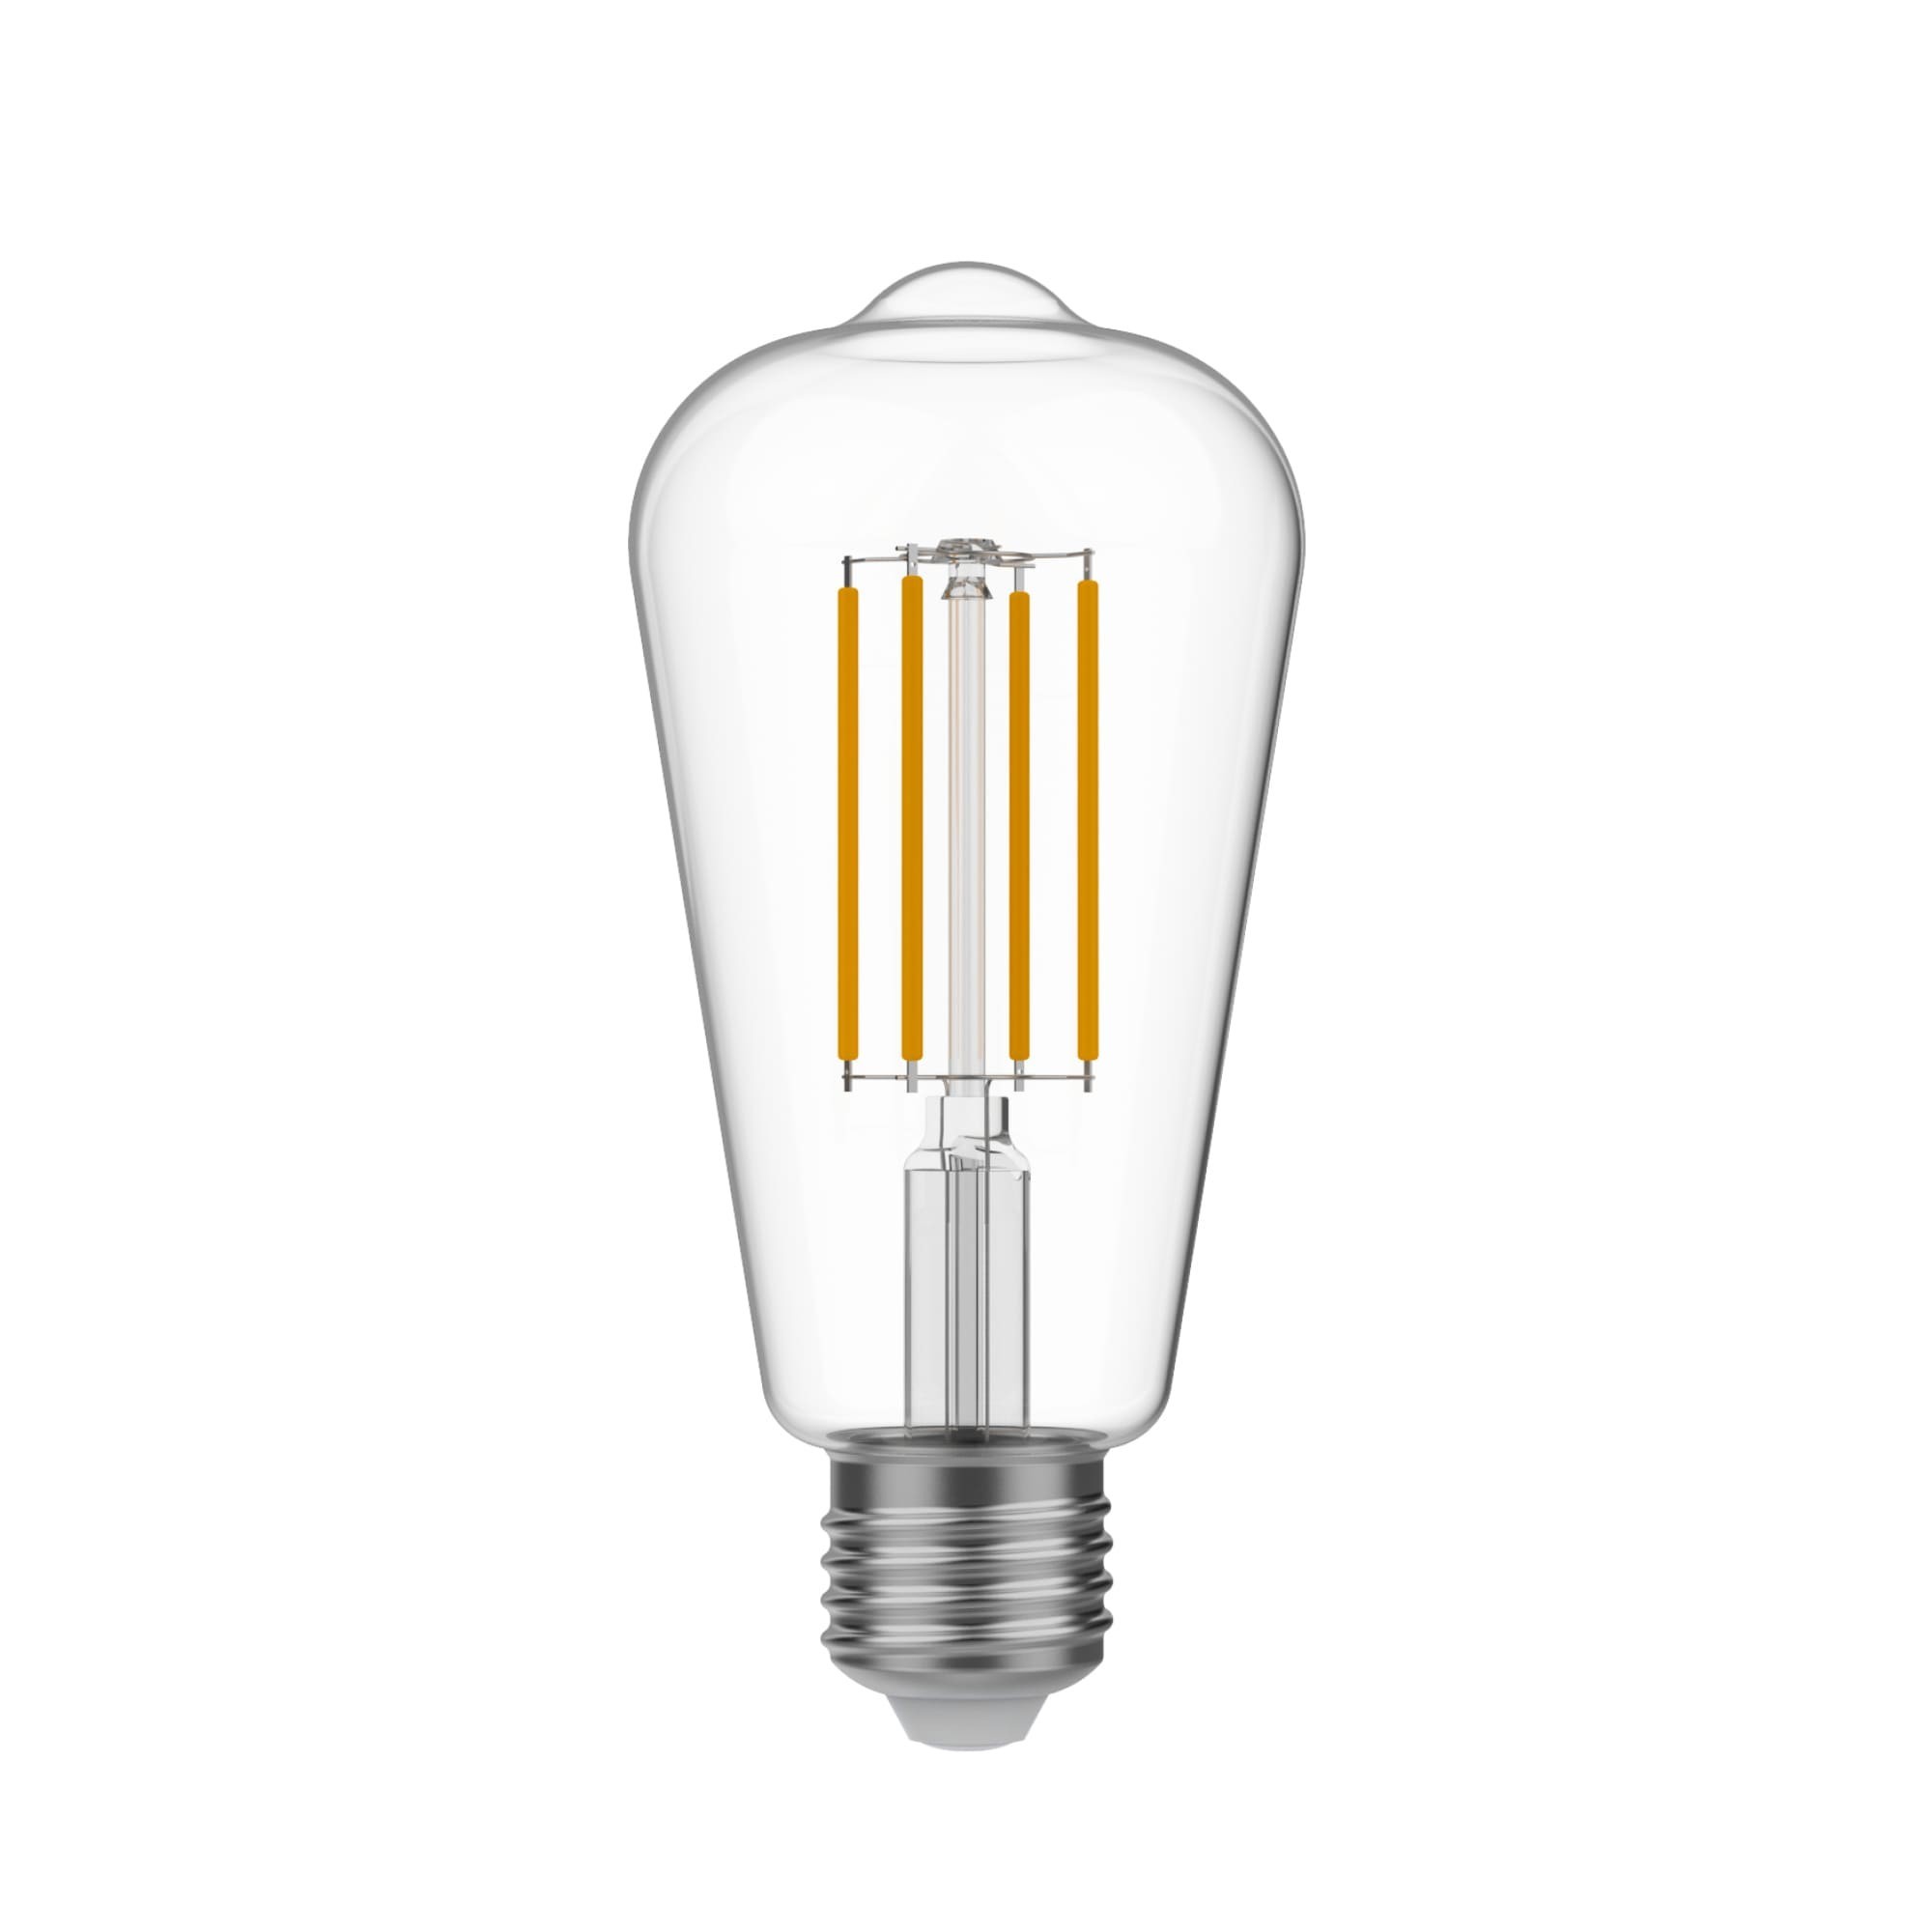 N02 - LED ST64 Light Bulb, E27, 7W, 3500K, 806Lm, clear glass